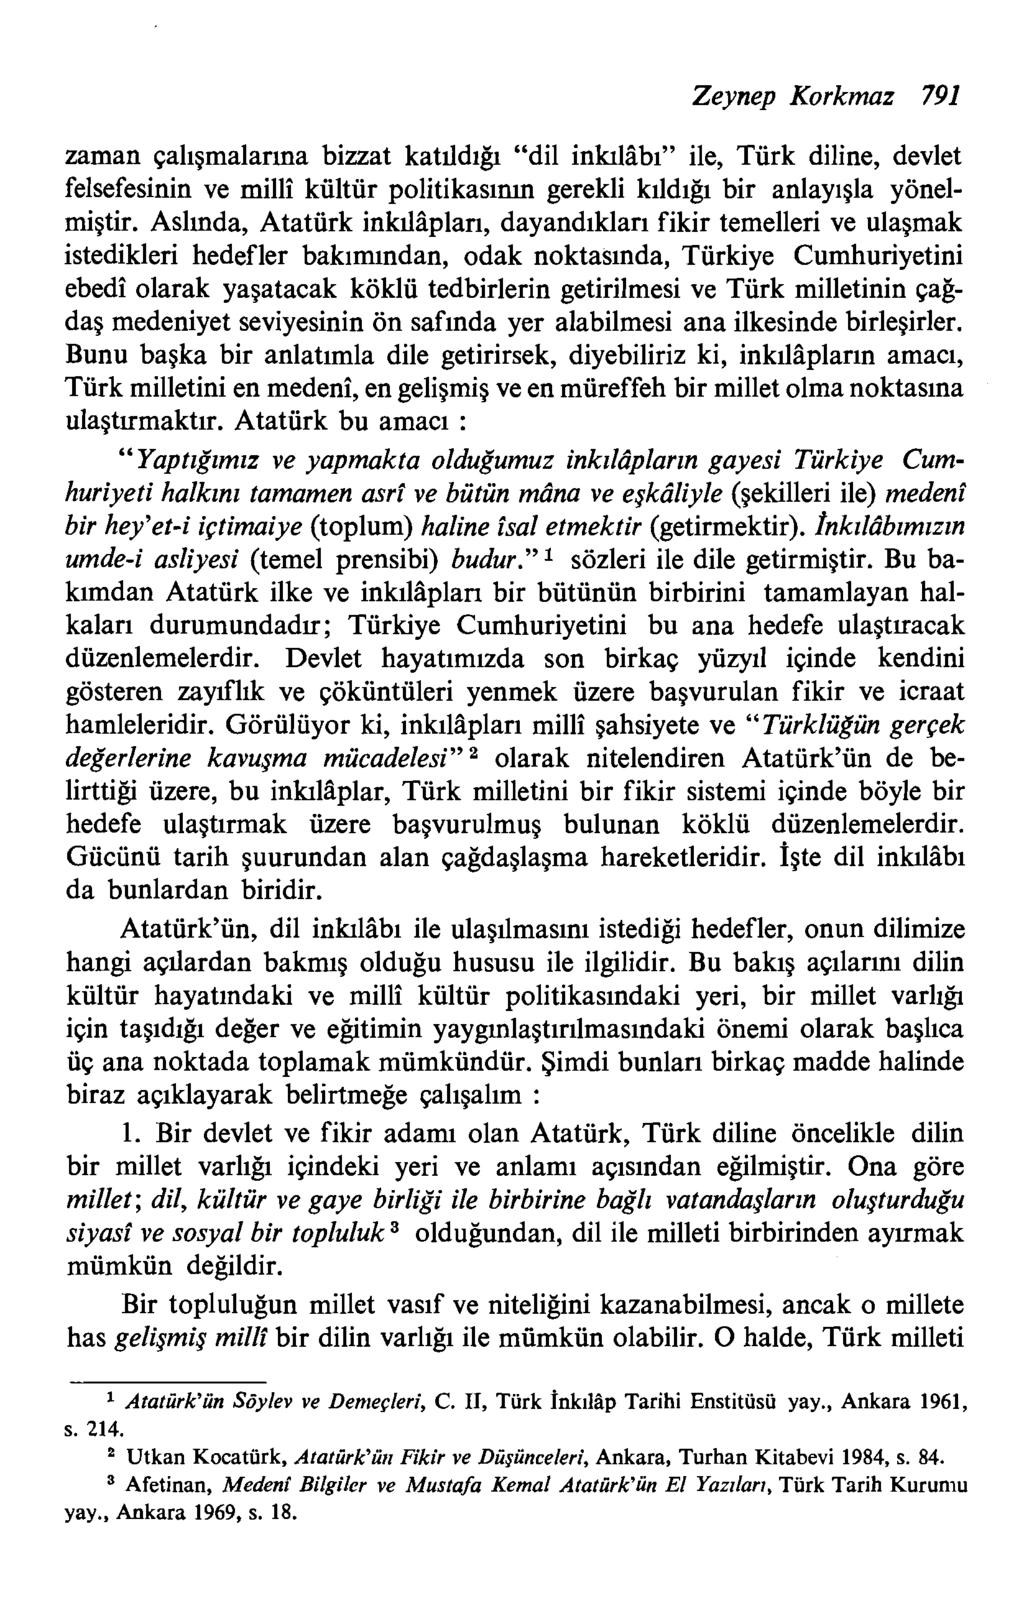 Zeynep Korkmaz 791 zaman qaligmalarma bizzat katddib "dil inlullbi" ile, Turk diline, devlet felsefesinin ve milli kultur politikasimn gerekli kildigi bir anlayigla yonelmigtir.